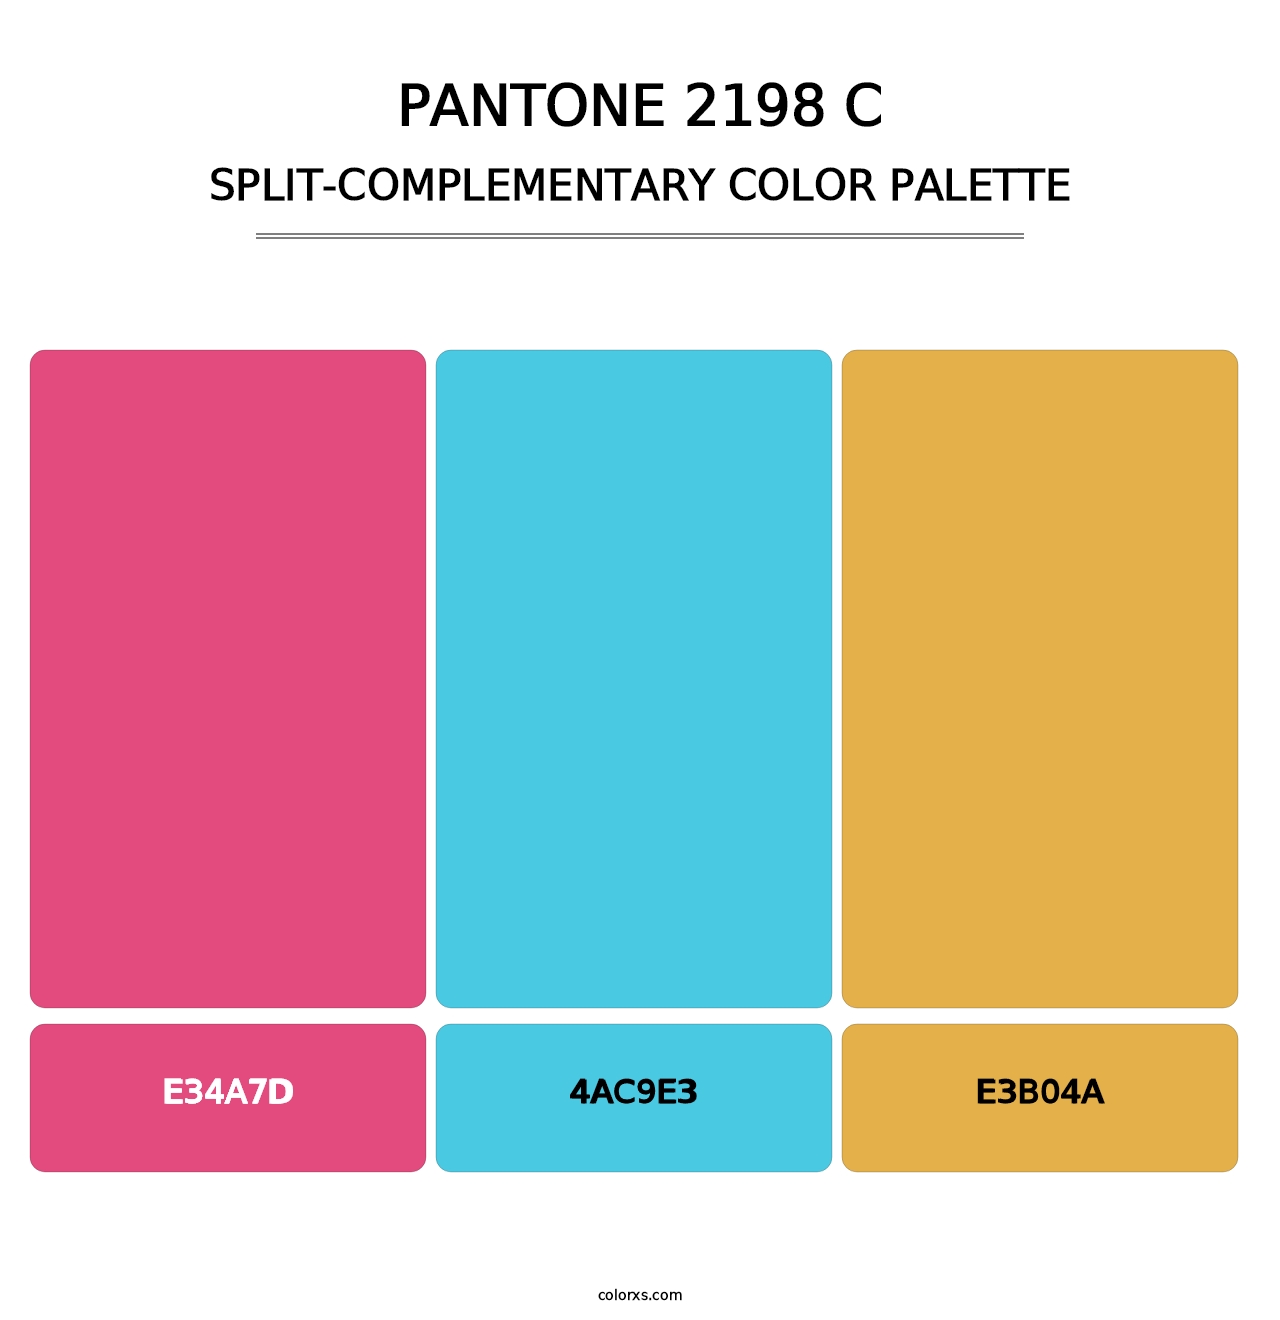 PANTONE 2198 C - Split-Complementary Color Palette